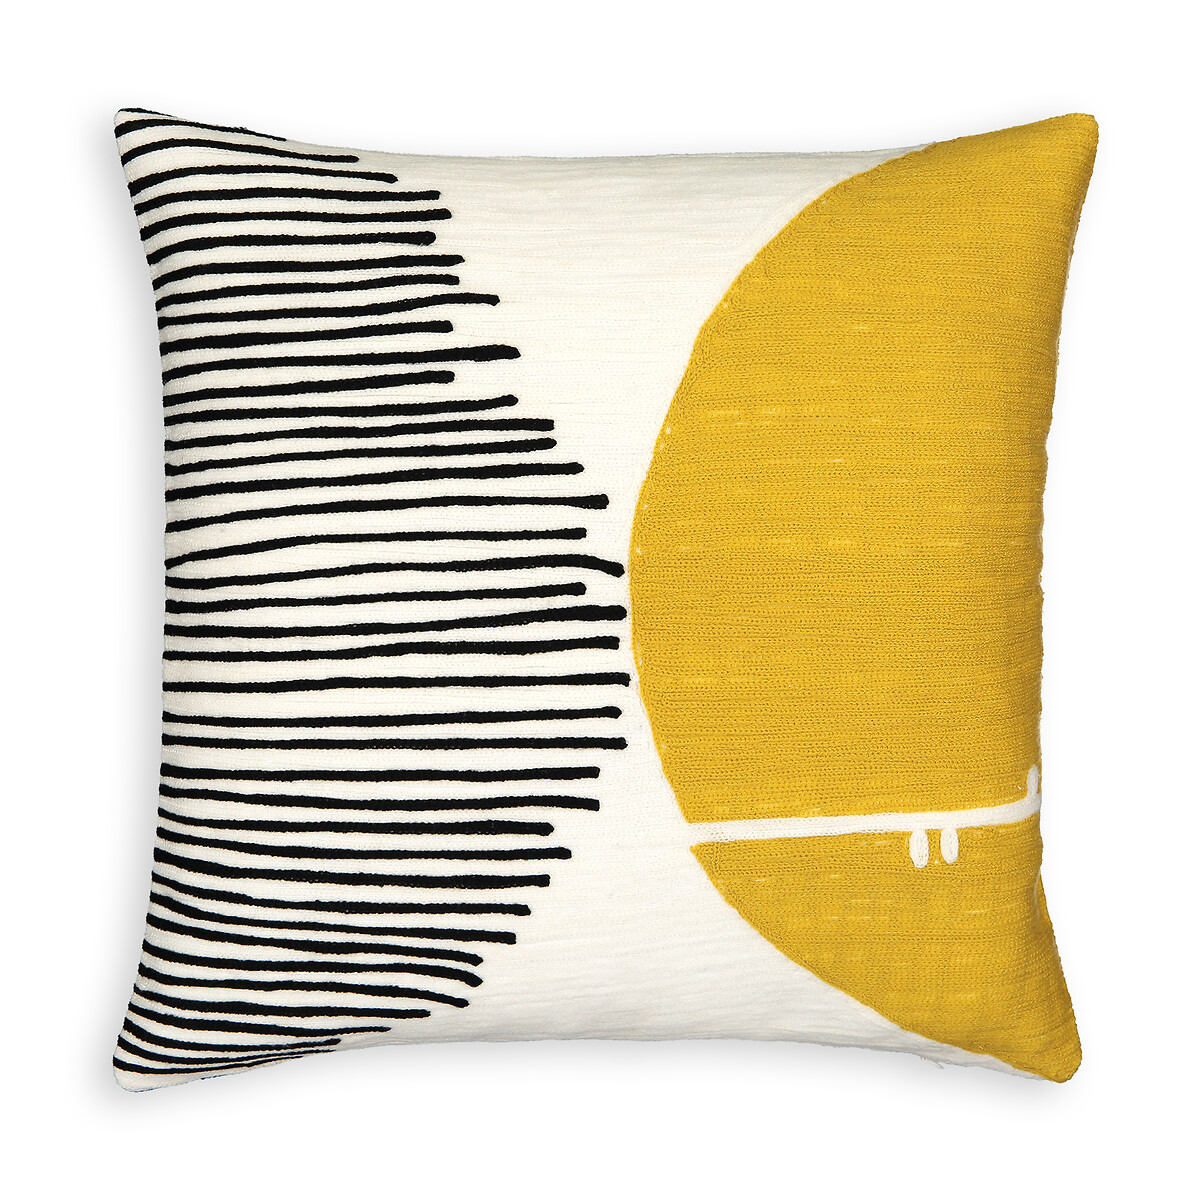 Чехол LaRedoute На подушку с вышивкой Mihna 45 x 45 см желтый, размер 45 x 45 см